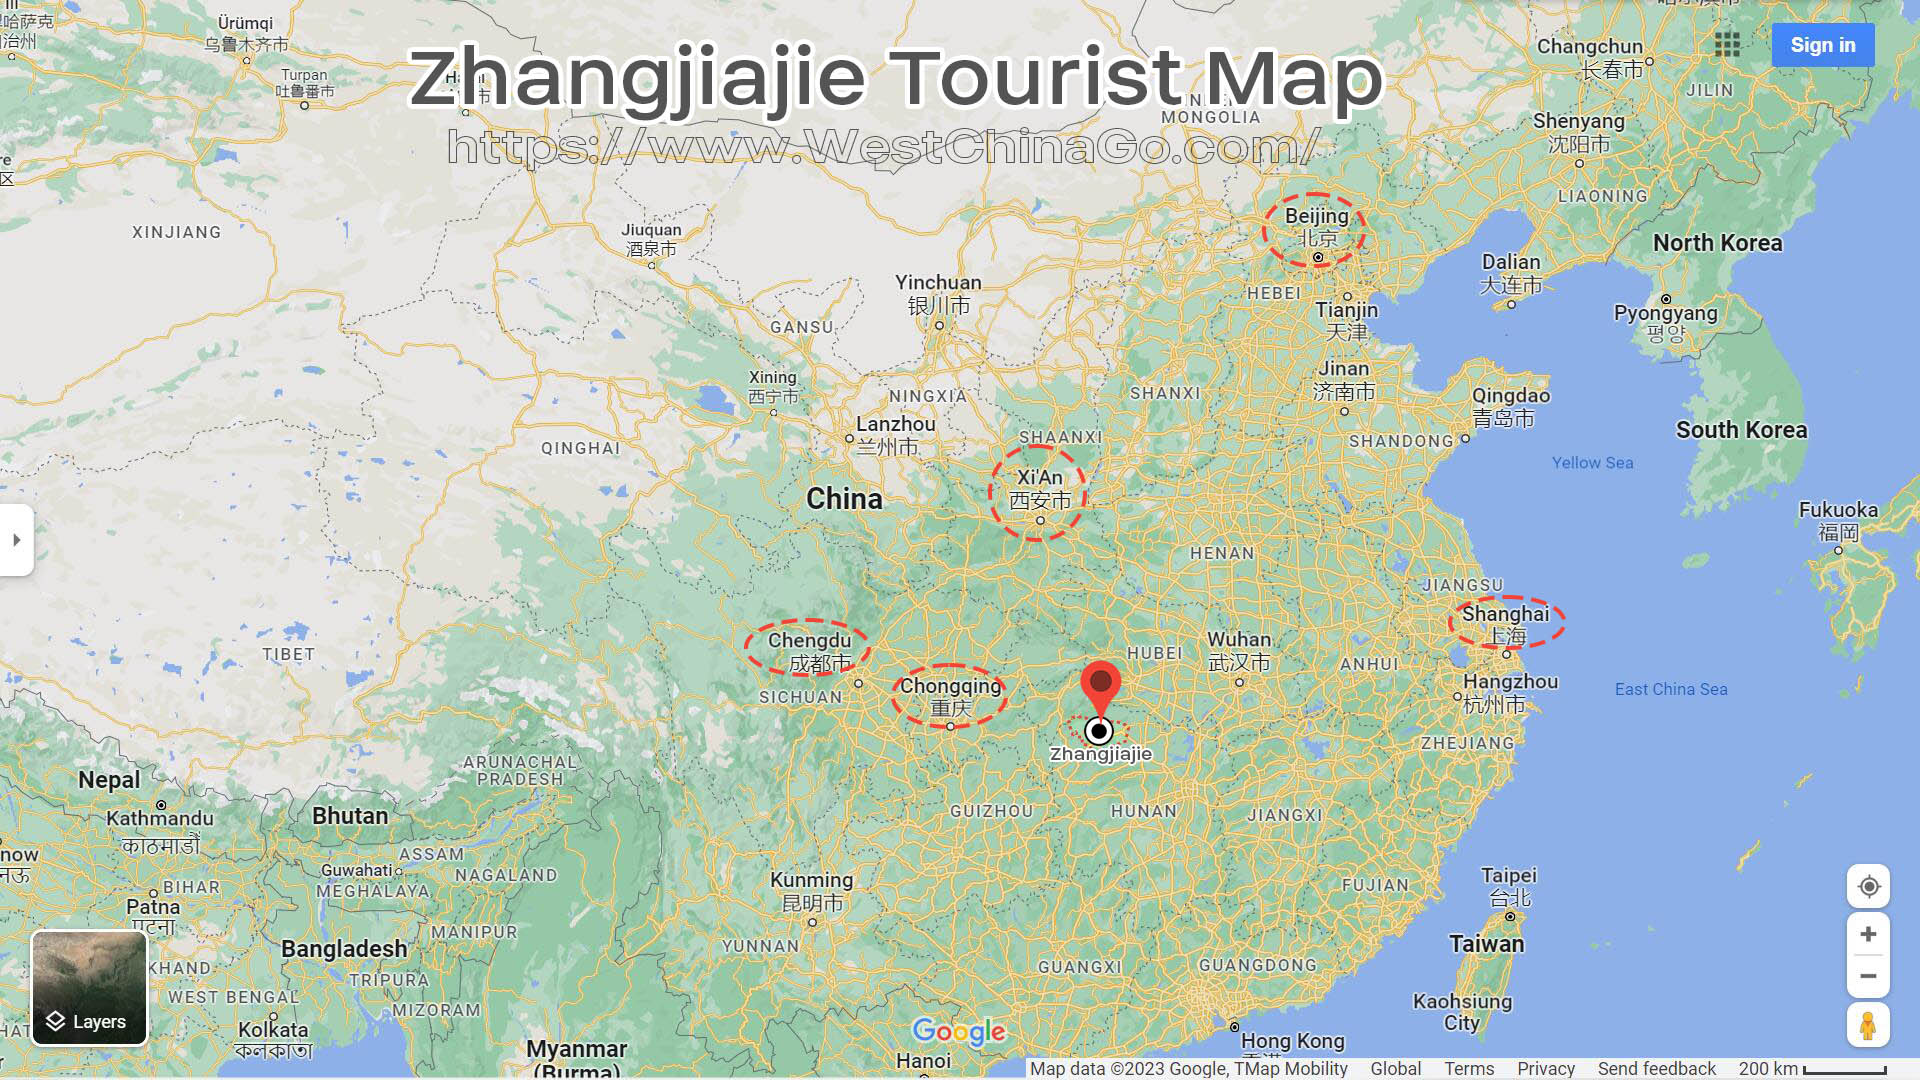 ZhangJiaJie Tourist Map